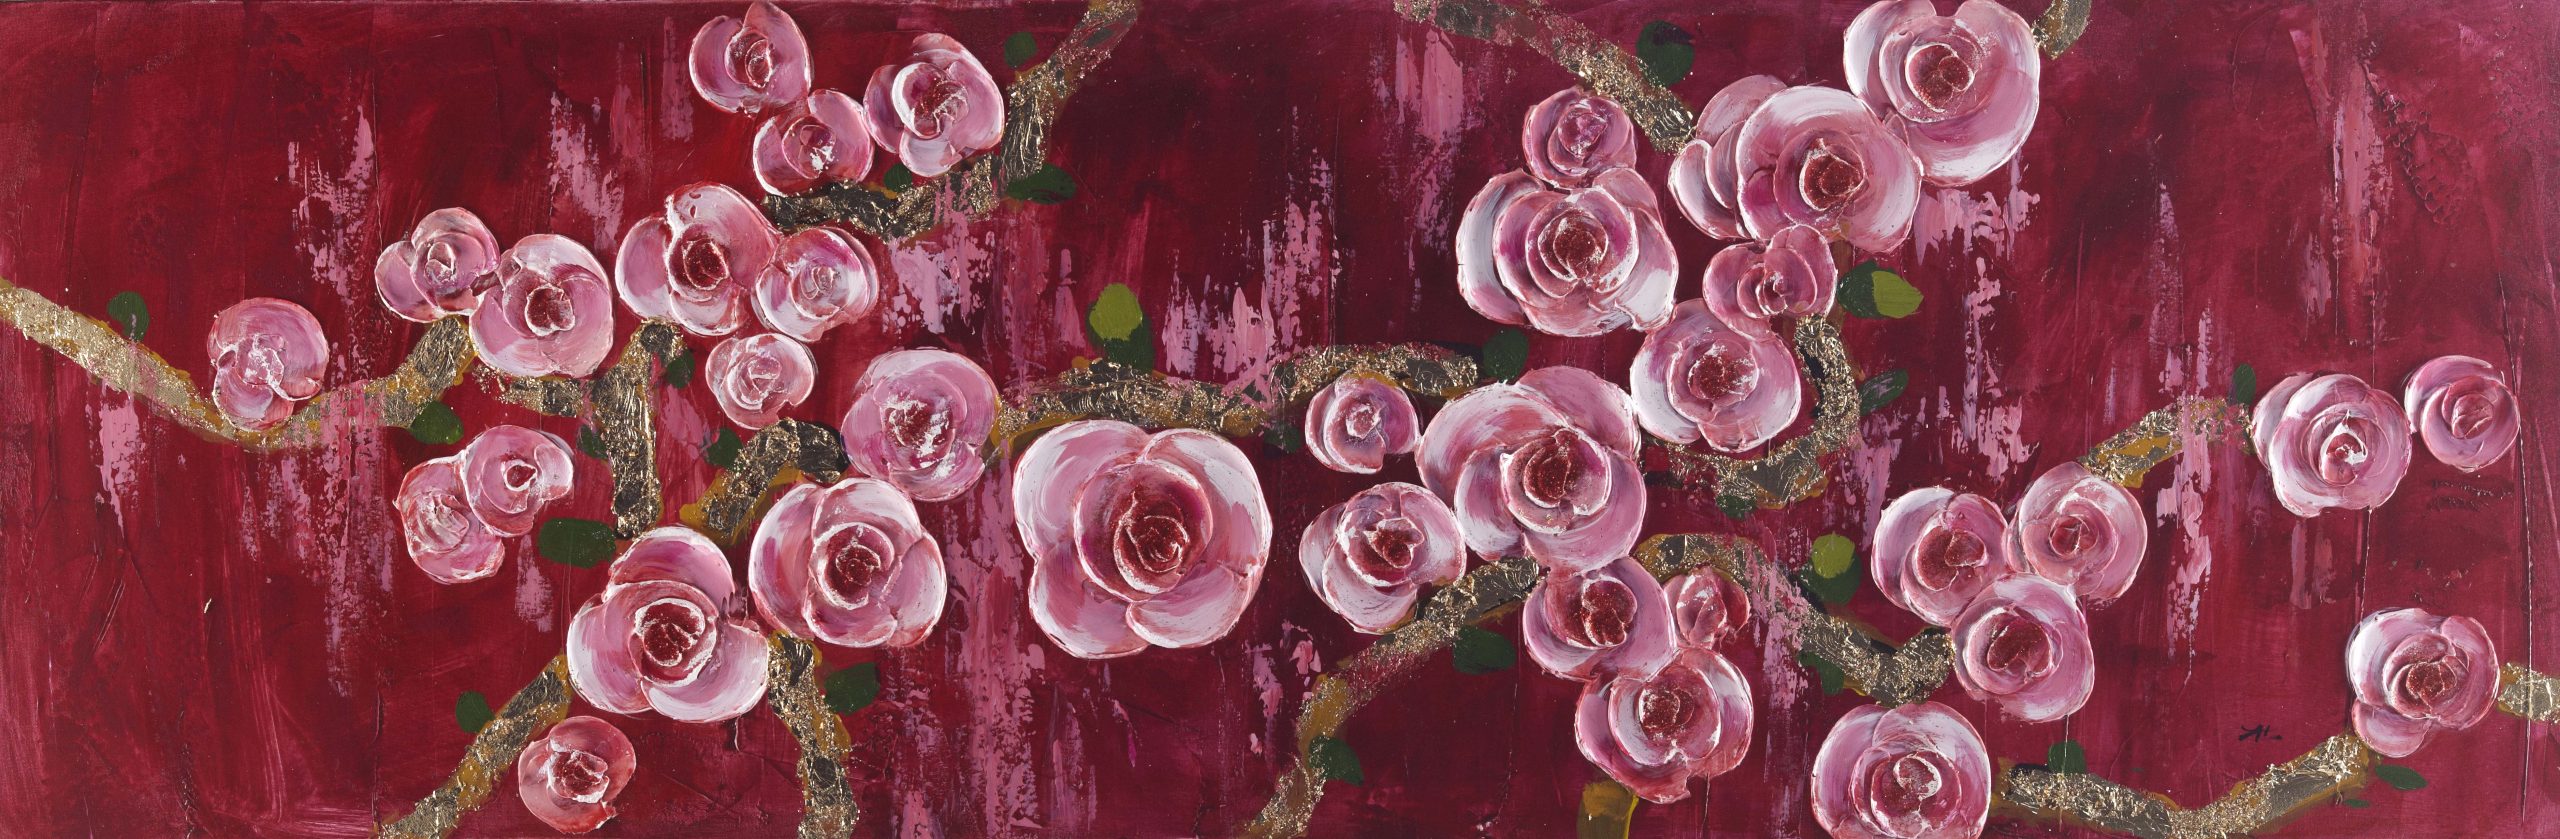 Vörös rózsa - kézzel festett olajfestmény